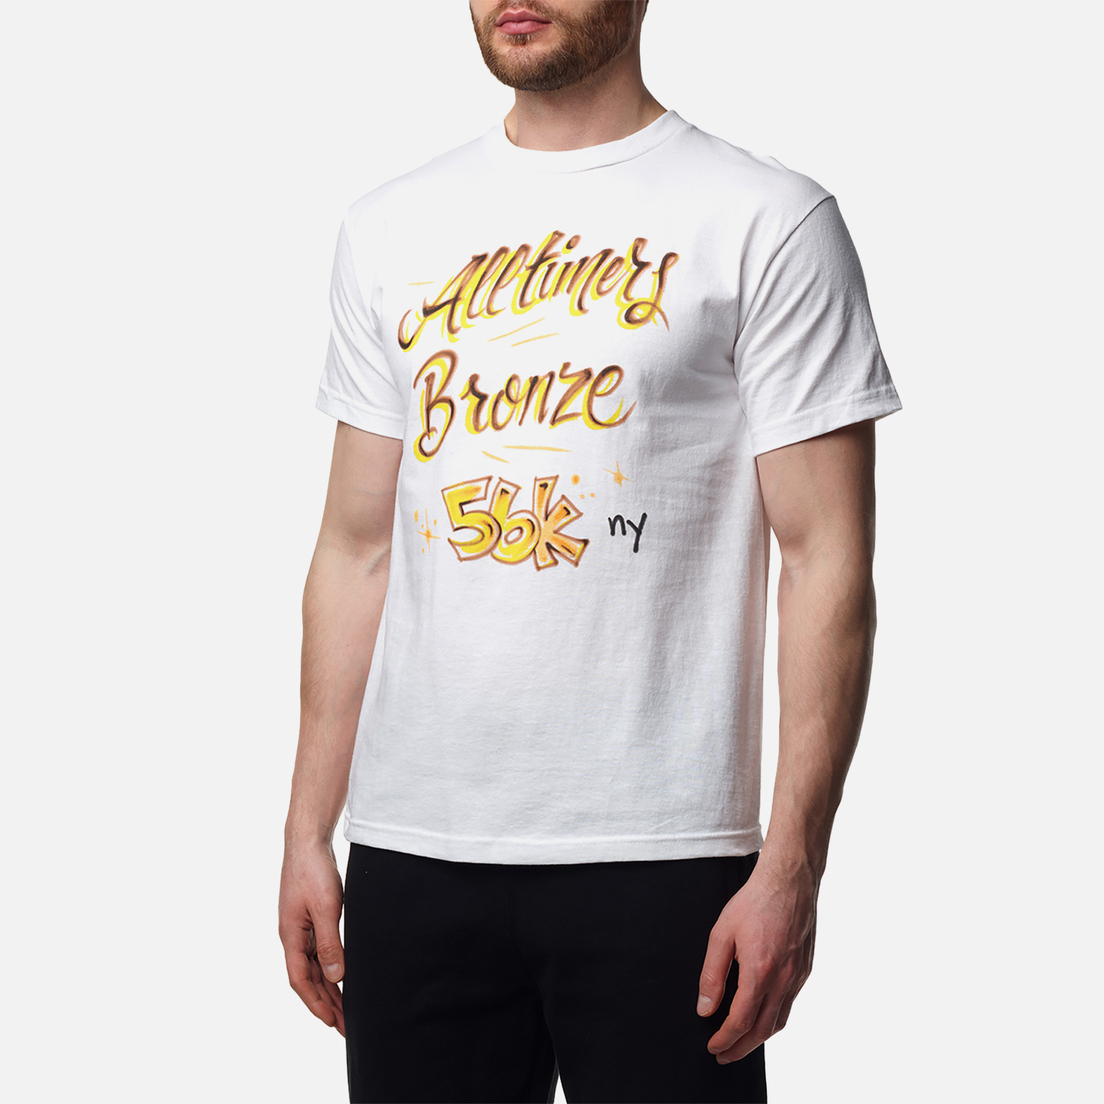 Alltimers Мужская футболка x Bronze 56K Lounge